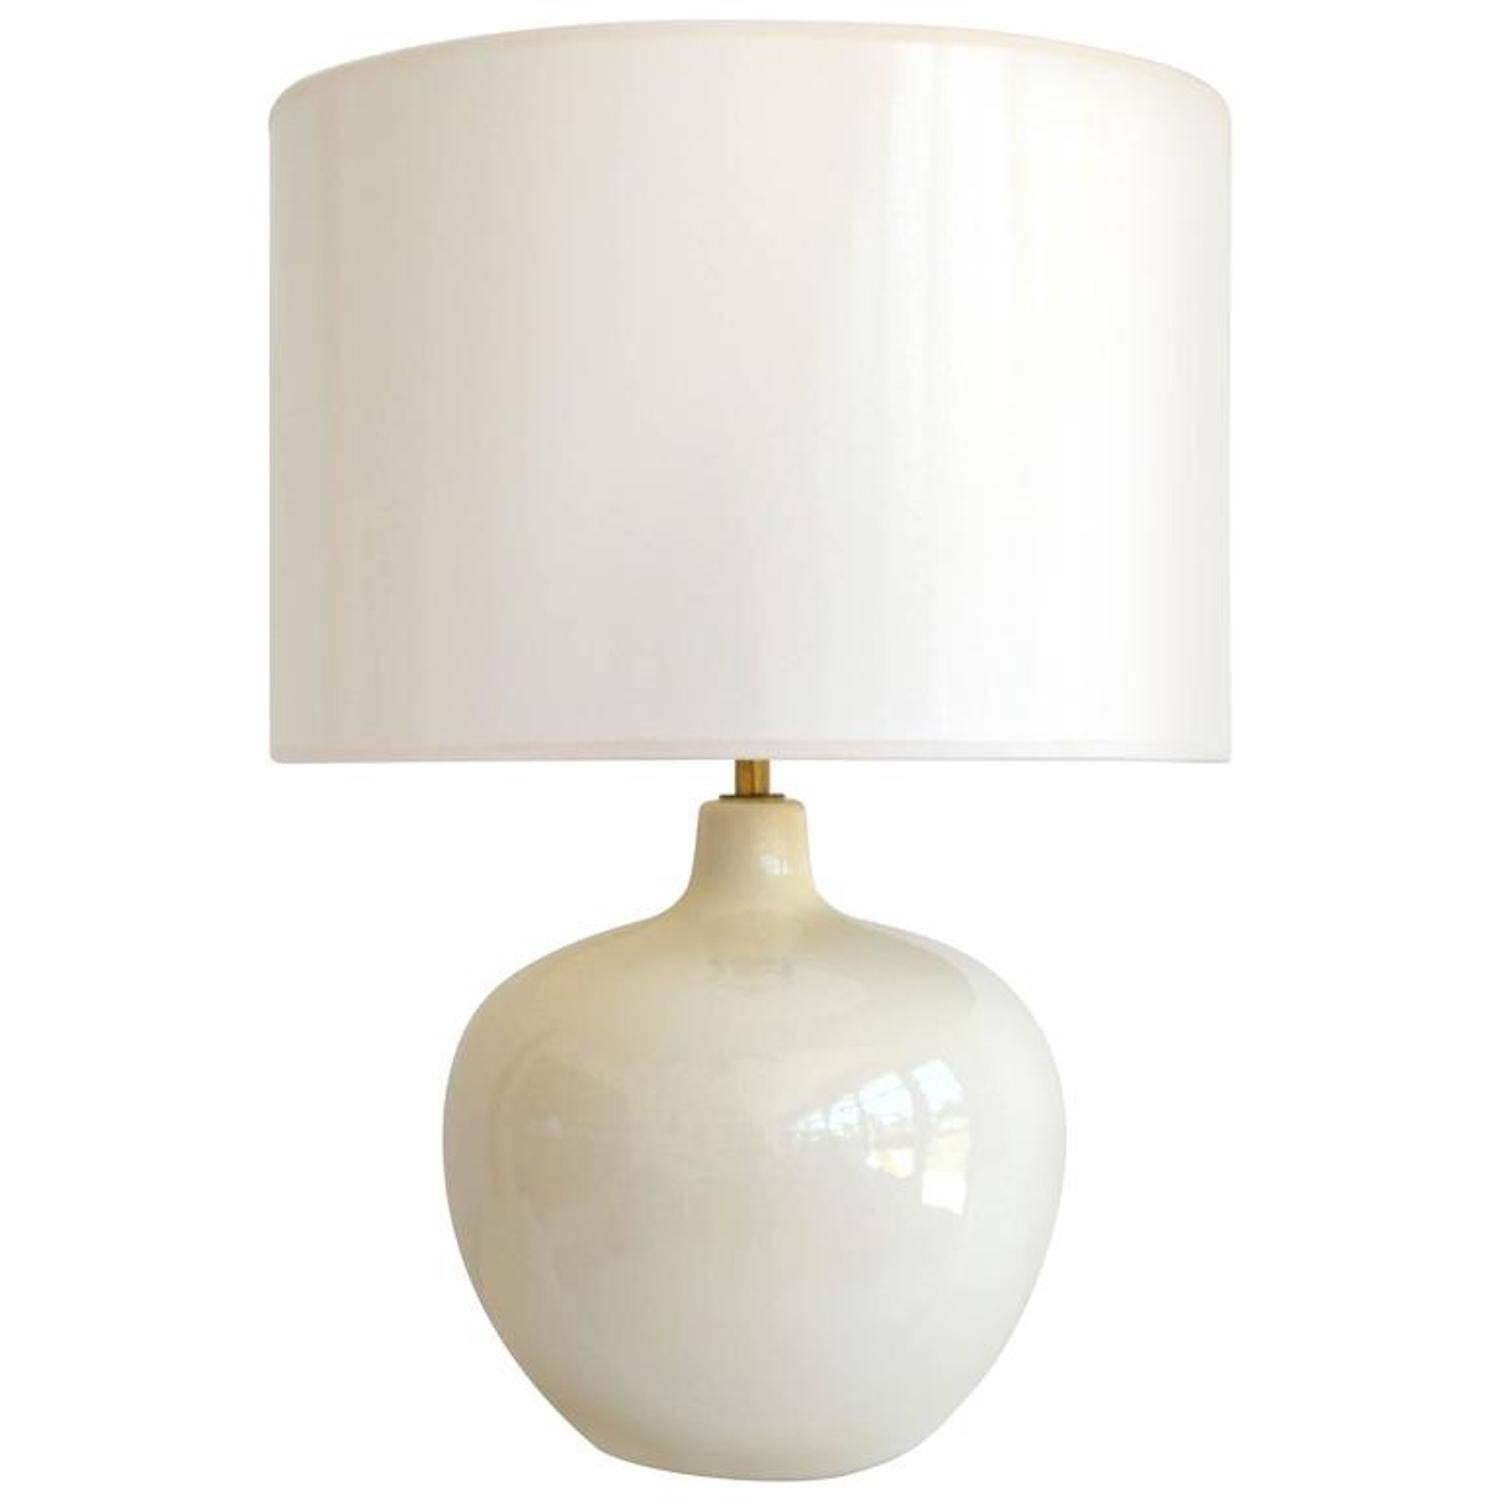 Midcentury White Glazed Ceramic Gourd Form Table Lamp